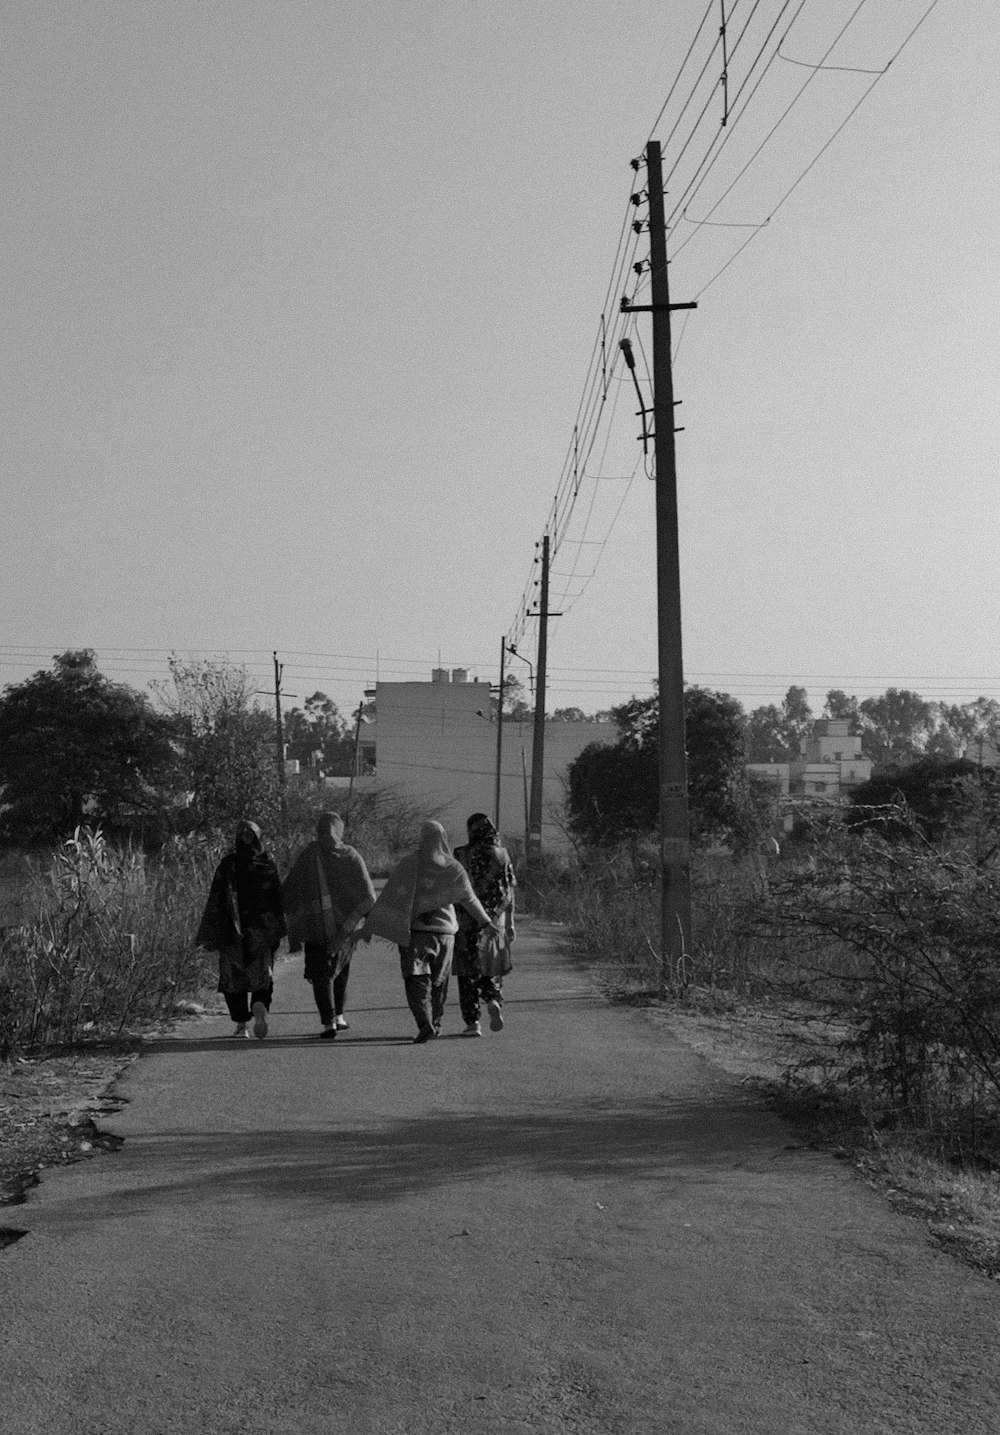 Un groupe de personnes marchant sur un chemin de terre